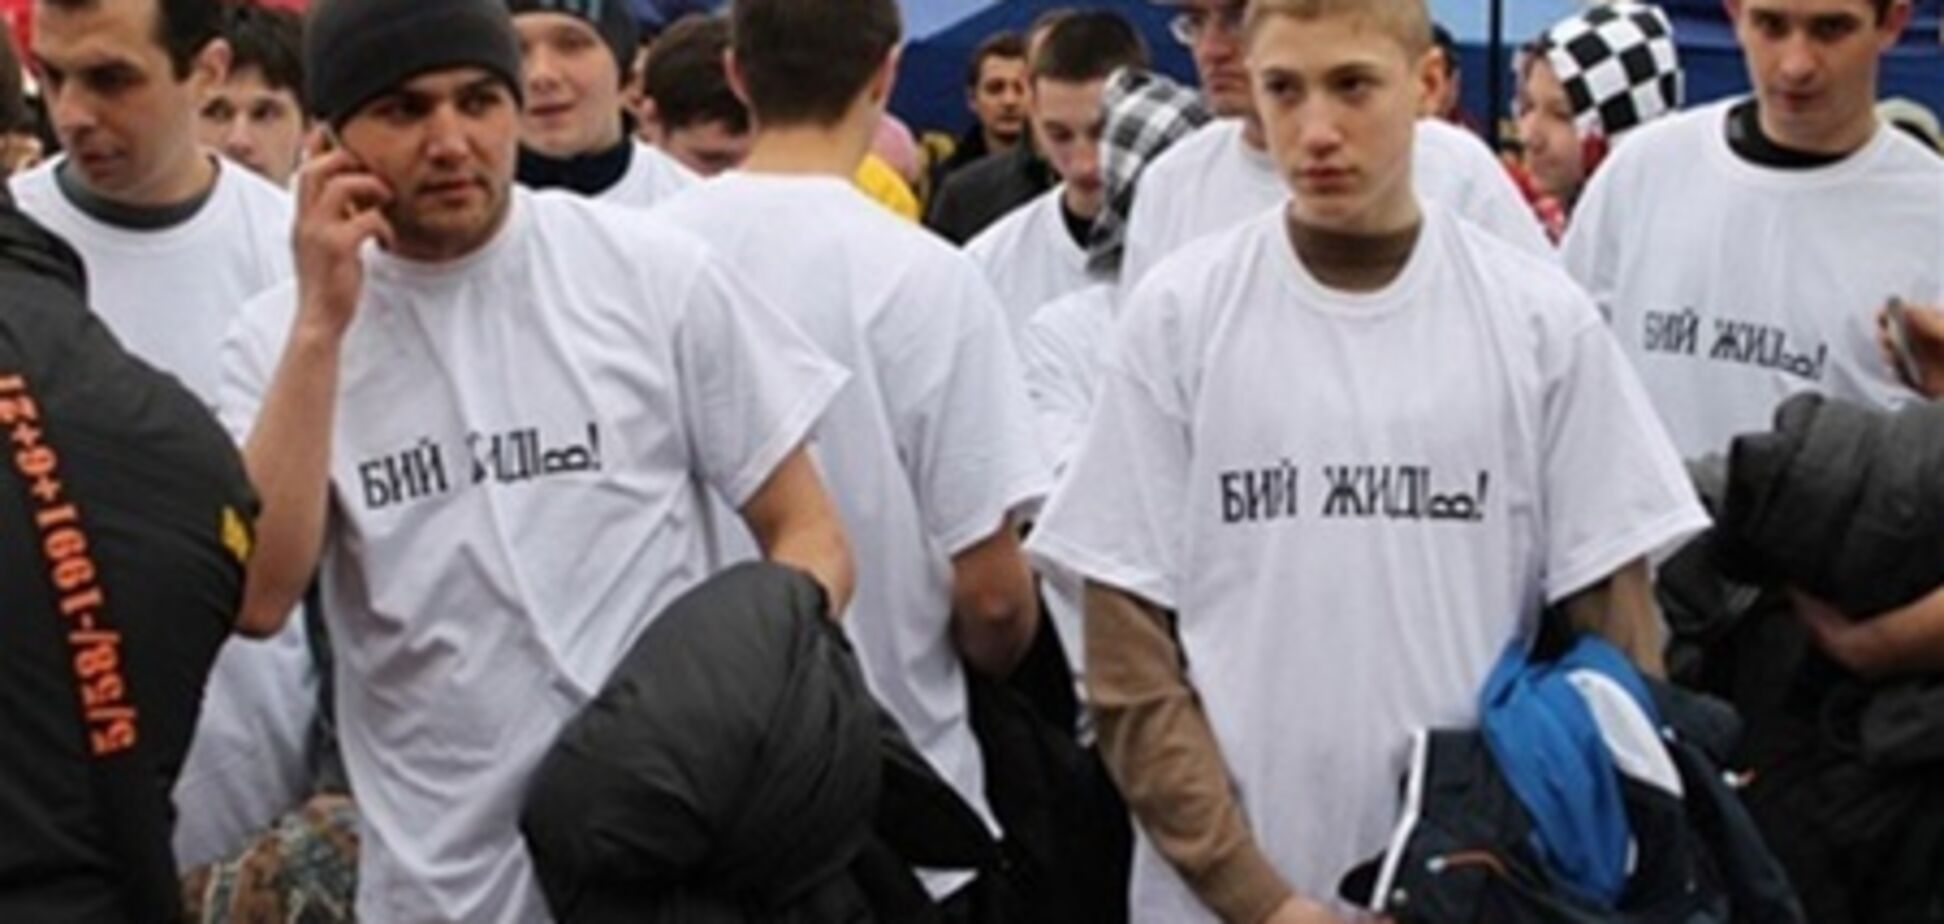 Милиция допросила 150 человек по футболкам 'Бей жидов!'